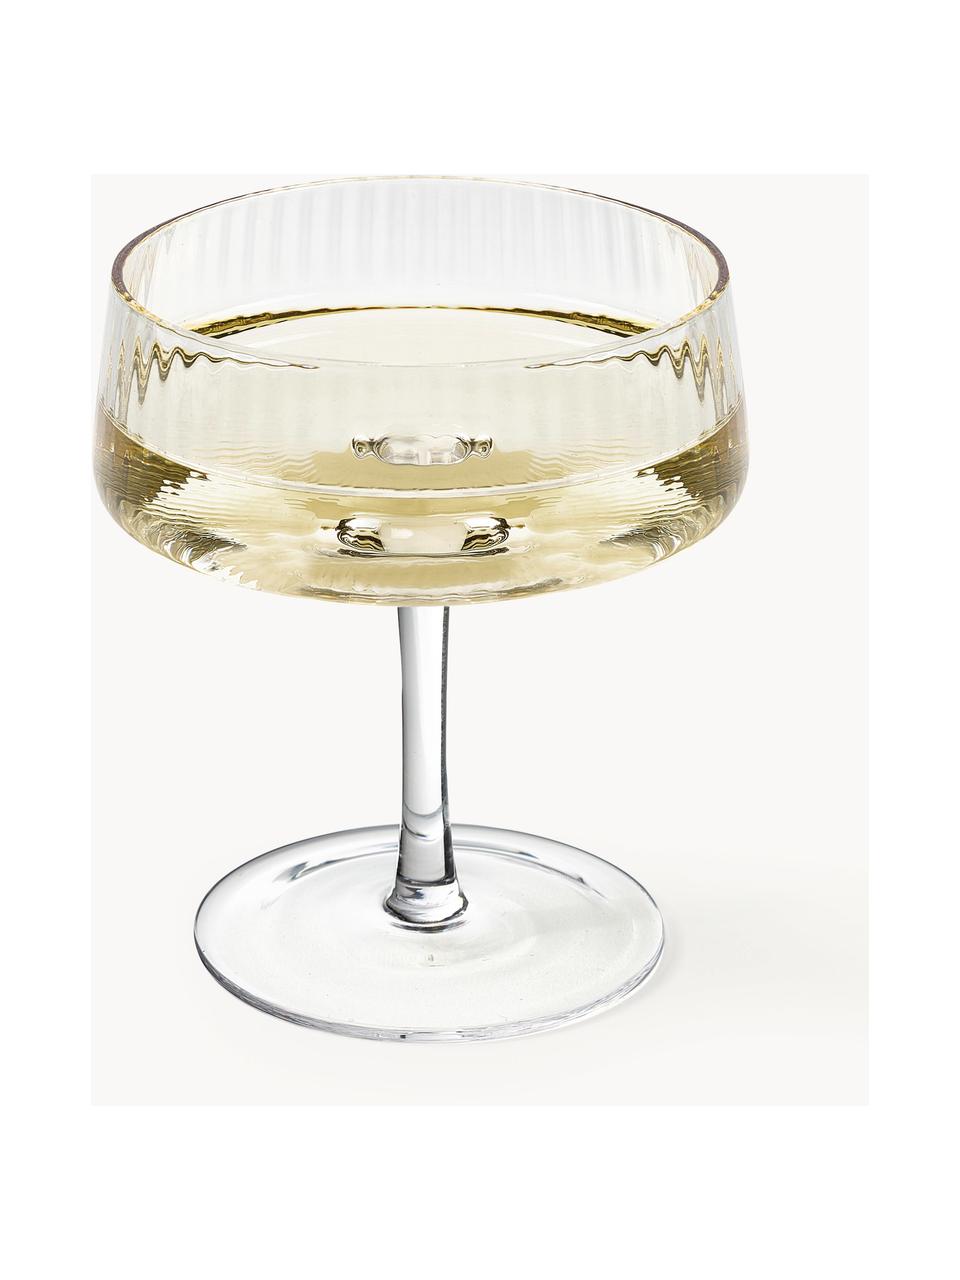 Handgefertigte Champagnerschalen Cami mit Rillenstruktur, 4 Stück, Glas, mundgeblasen, Transparent, Ø 11 x H 13 cm, 200 ml